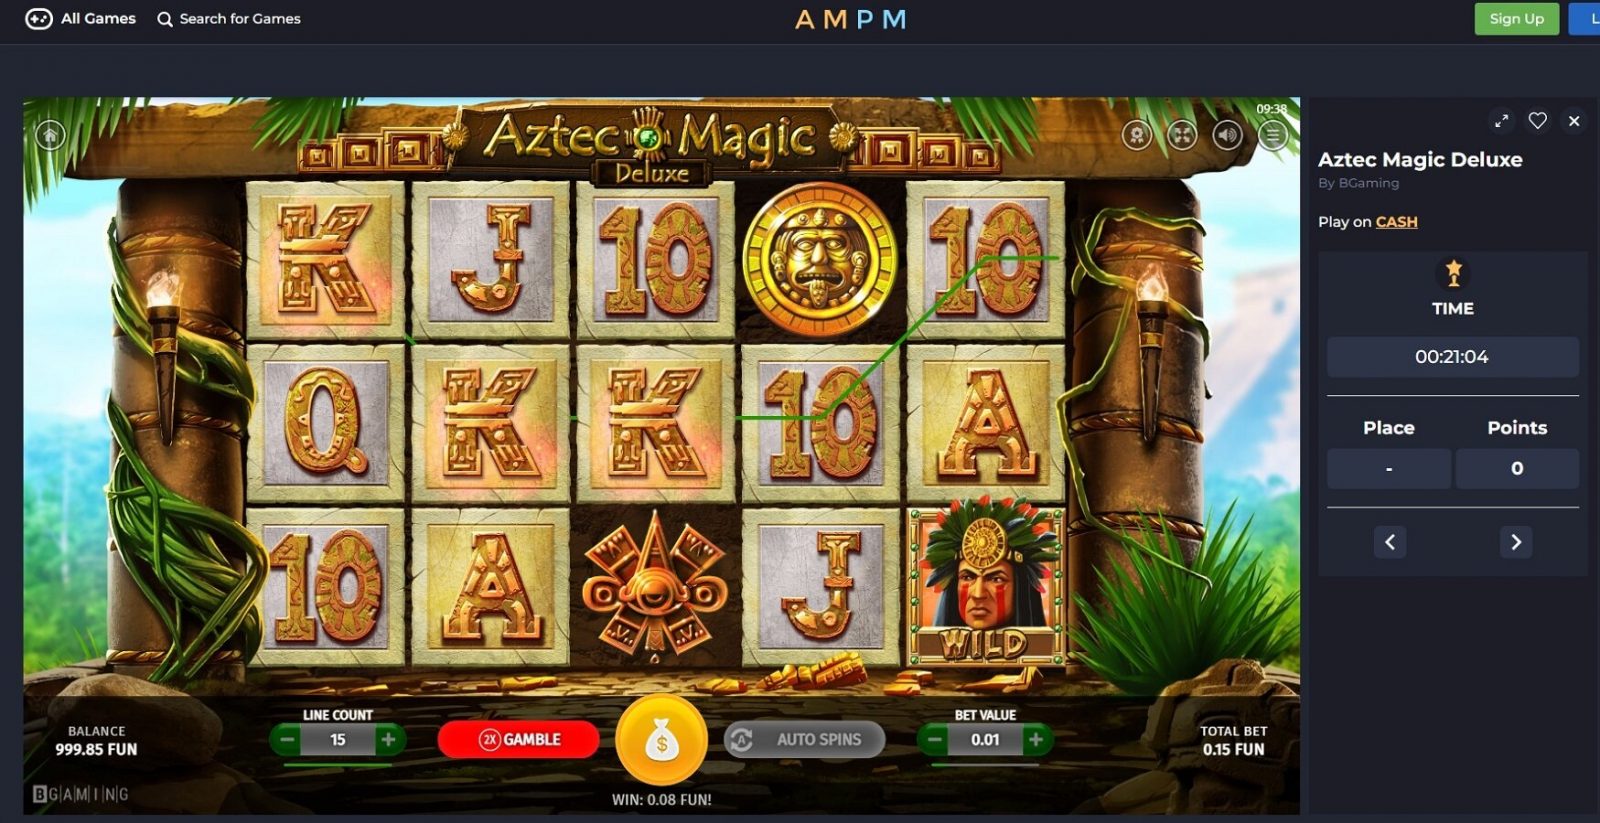 am_pm_casino_Aztec_Magic_Deluxe